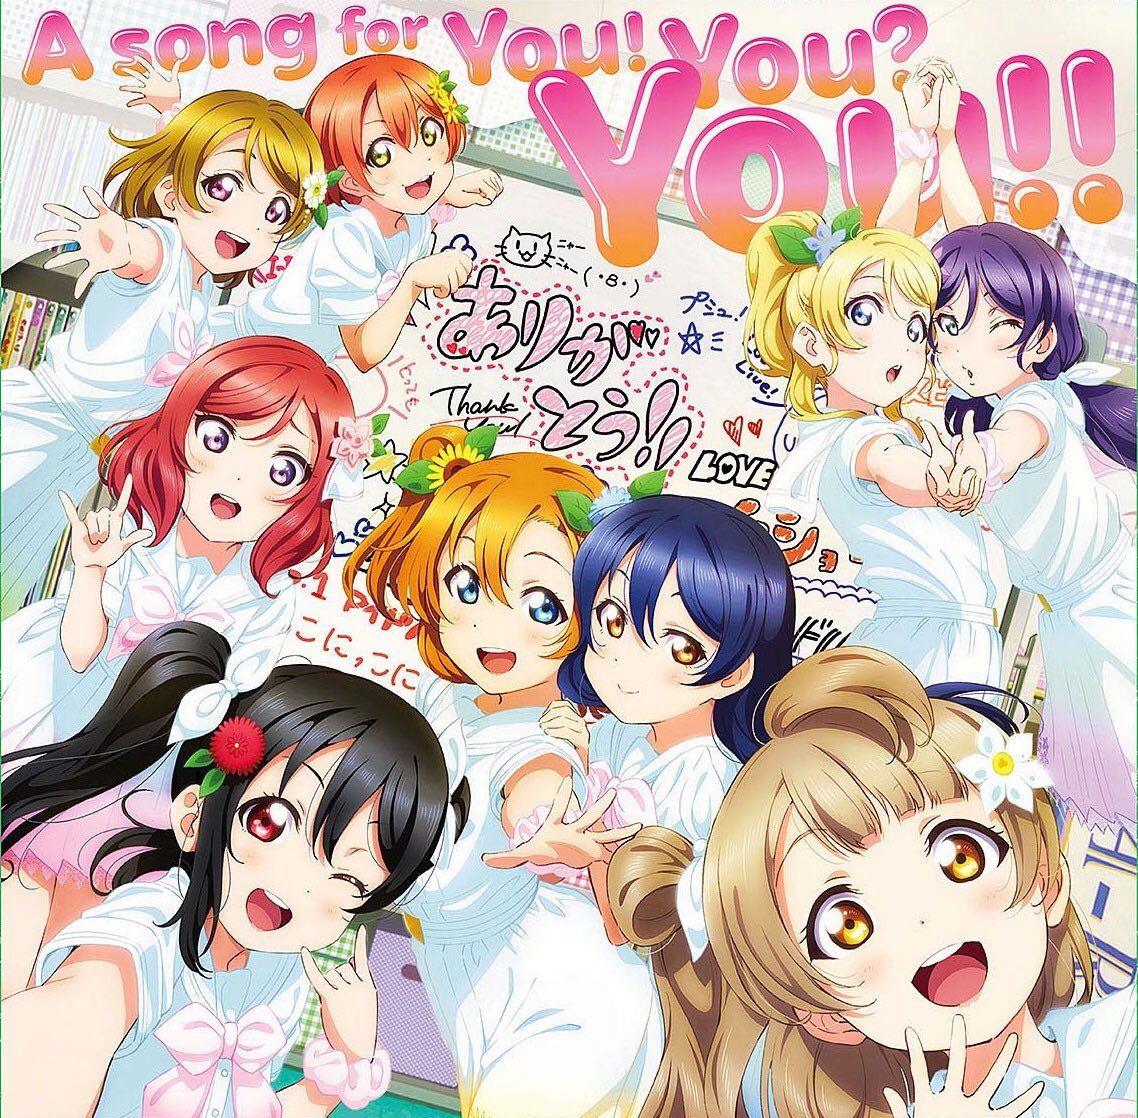 μ's "A song for You! You? You!!" Release Event Information